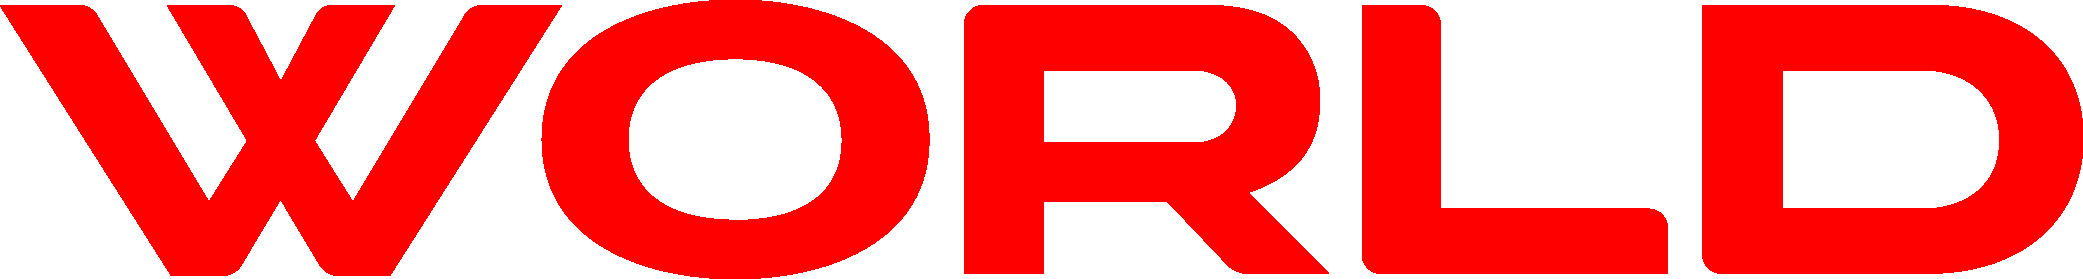 World Logo [Magazine]